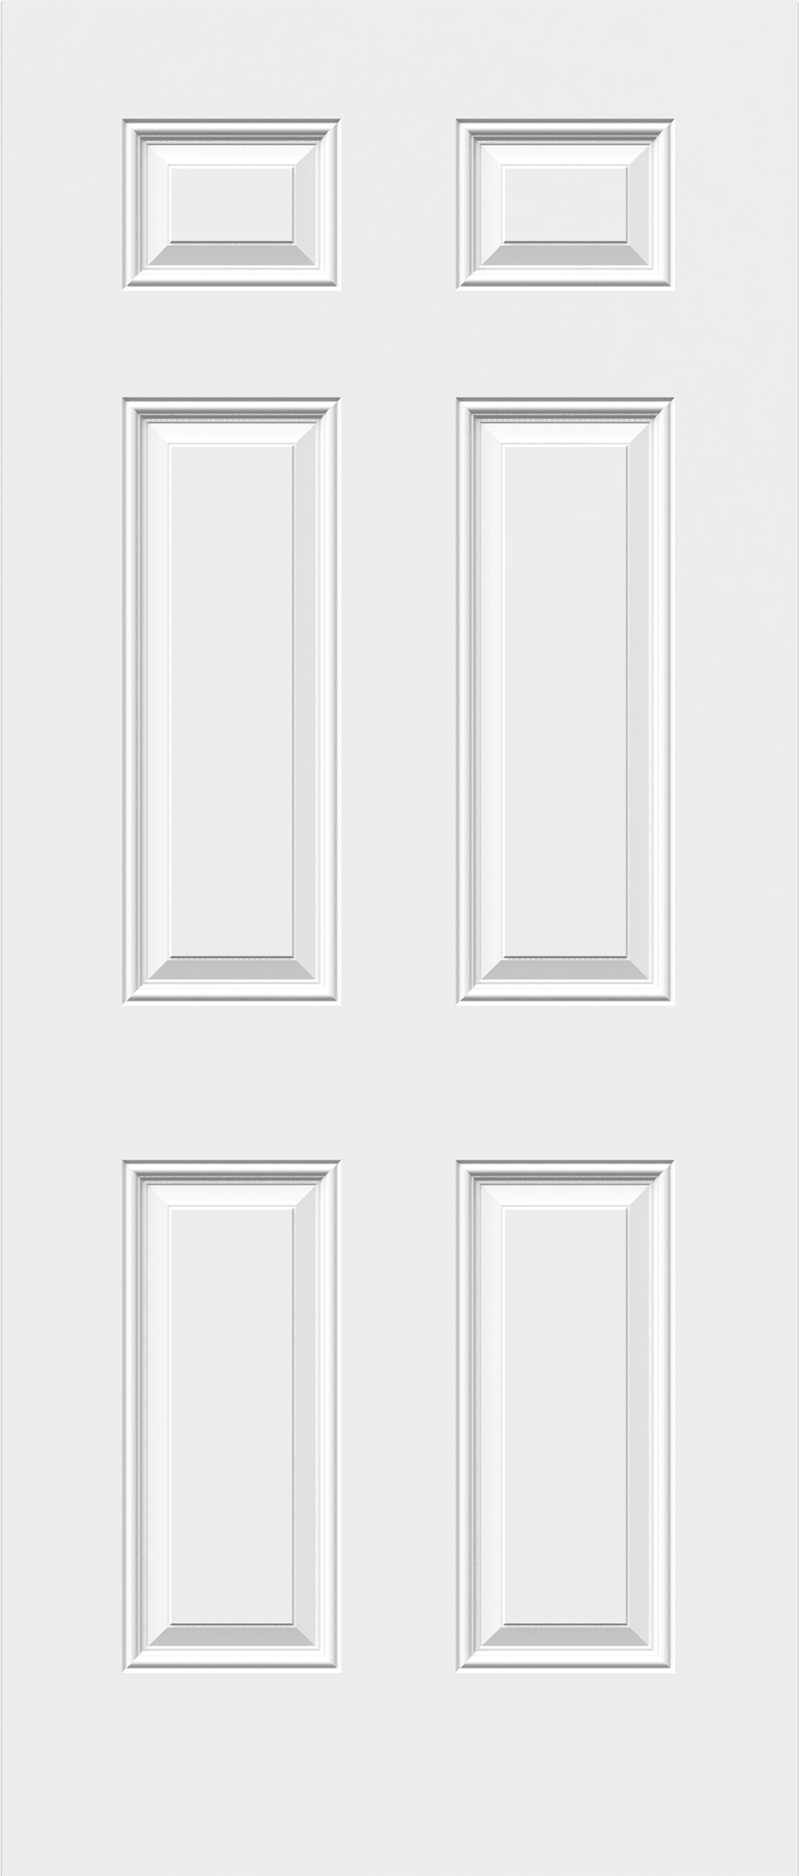 6 panel steel doors